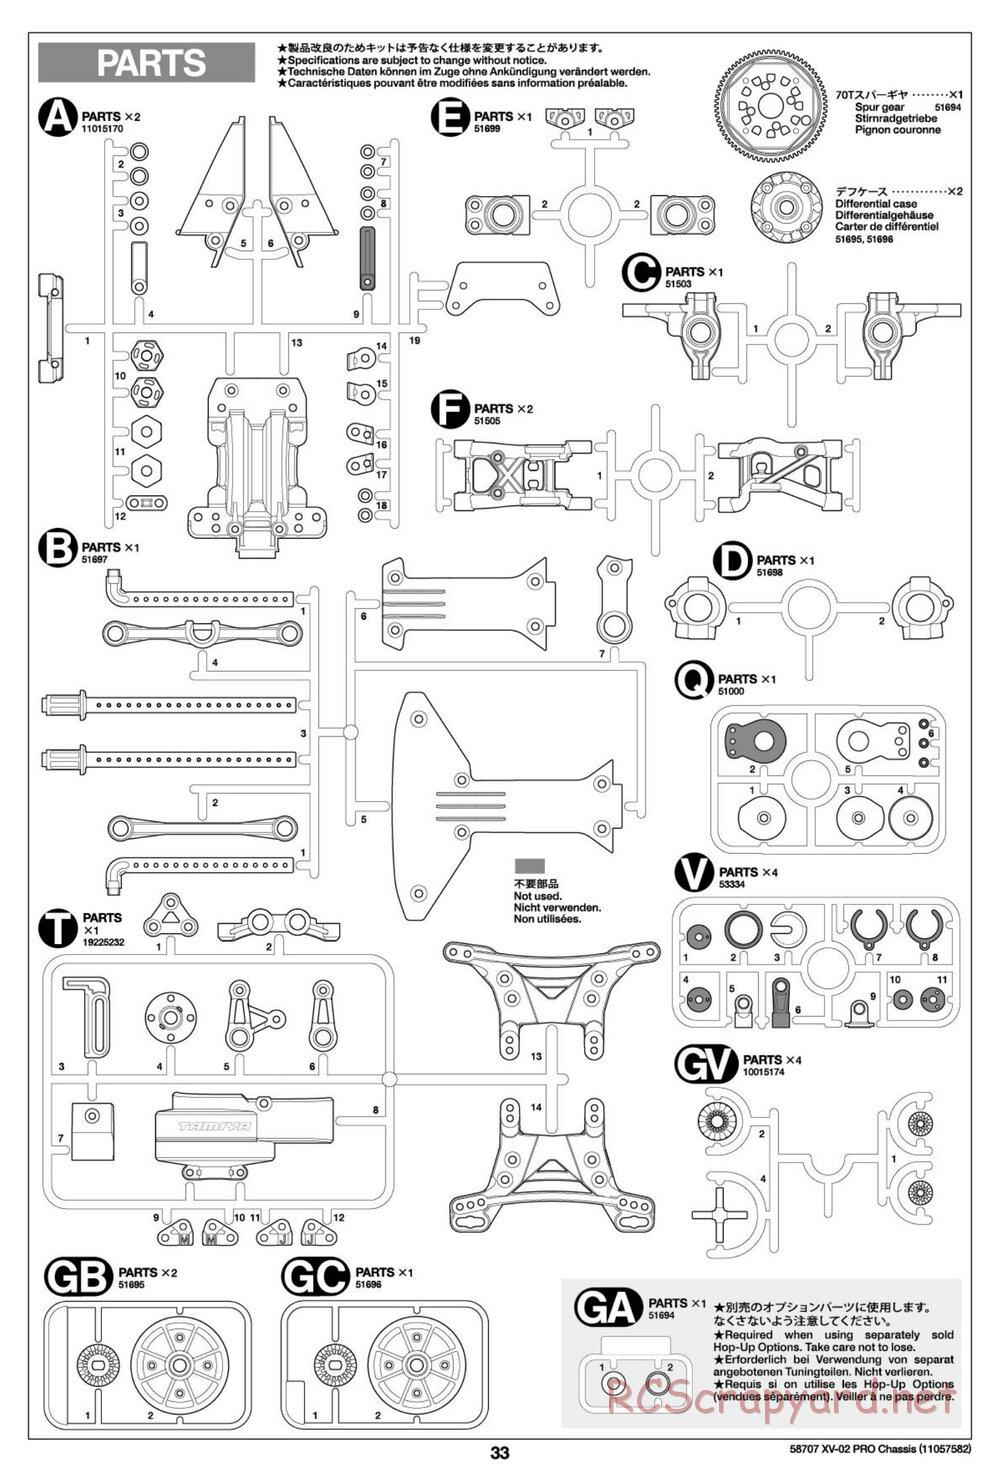 Tamiya - XV-02 Pro Chassis - Manual - Page 33